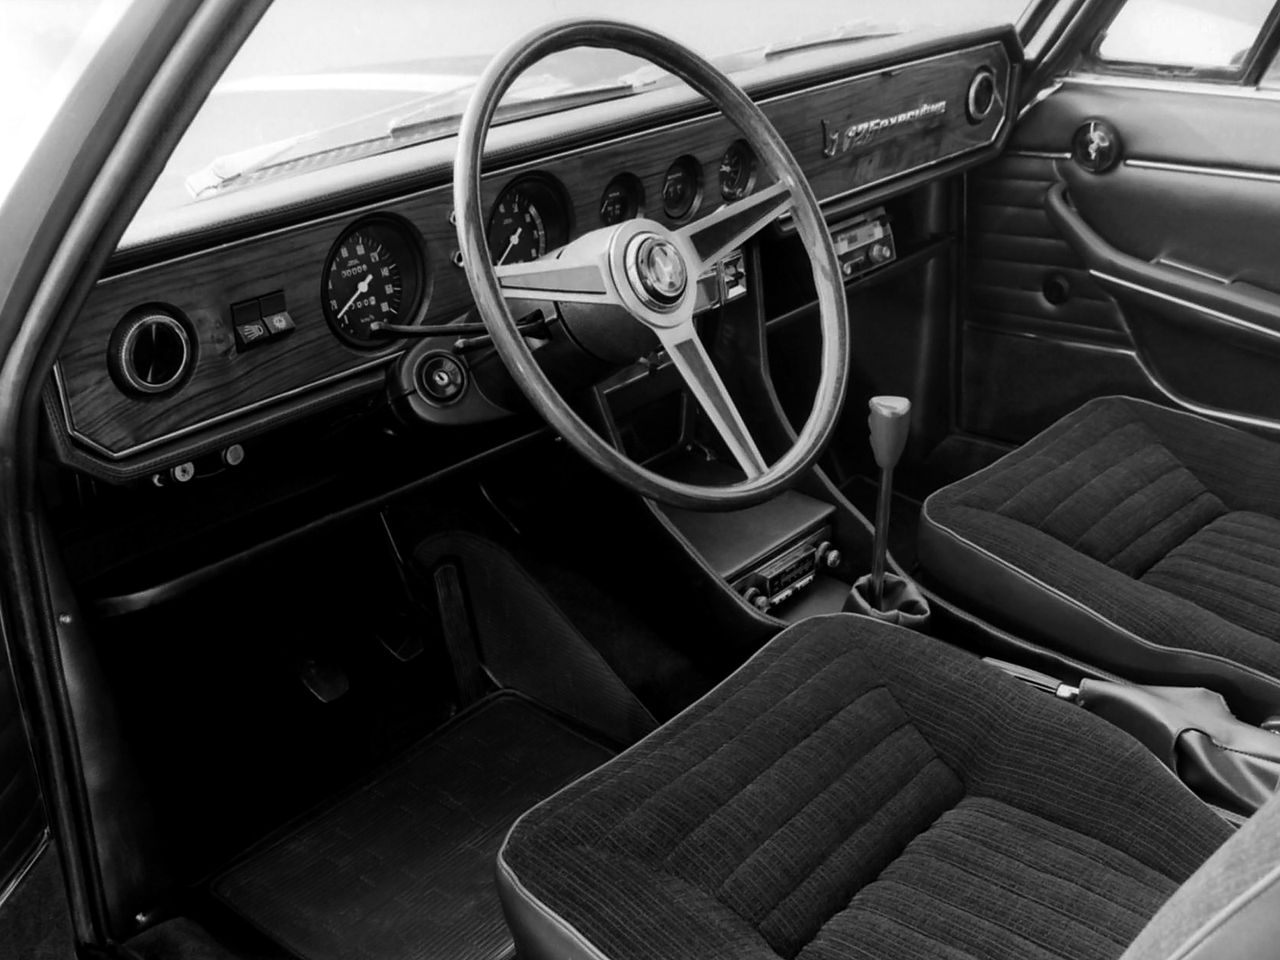 1967 Fiat 125 Executive Concept (projekt Bertone)